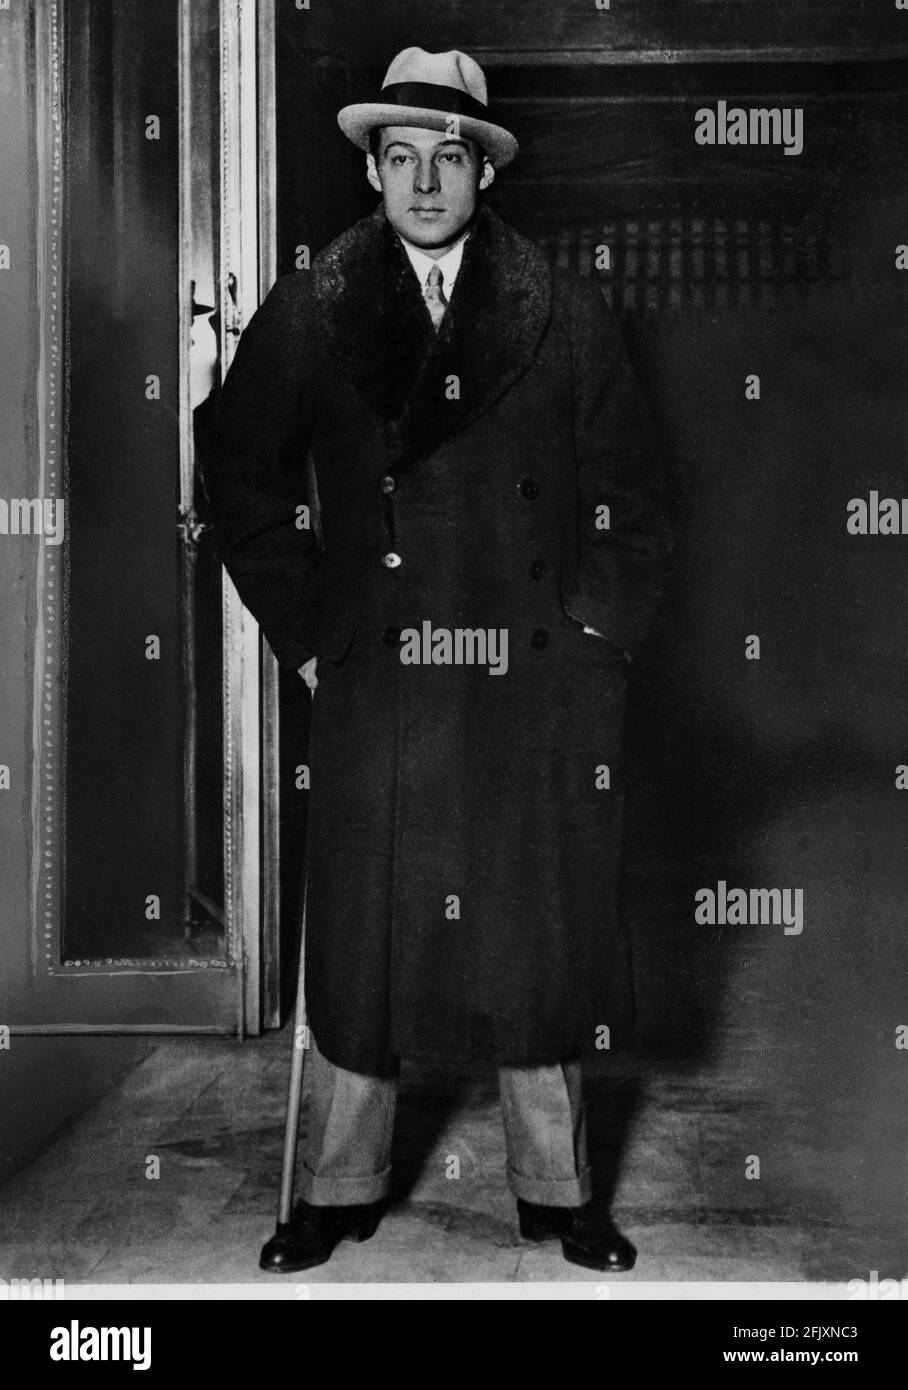 1924 Ca, USA : der Stummfilmschauspieler RUDOLPH VALENTINO ( geboren Rodolfo Guglielmi ,1895 - 1926 ) pubblicary still . - KINO MUTO - RODOLFO VALENTINO - Attore cinematografico - LATIN LOVER - italoamericano - italo americano - italo-americano - Emigrant - emigrante - italo-amerikanisch - Portrait - ritratto - sguardo magnetico - Krawatte - Cravatta - Hut - cappello - astrakan - astracan - Pelliccia - Fell - Baston Da passeggio - Stock - cappotto - Fell ---- Archivio GBB Stockfoto